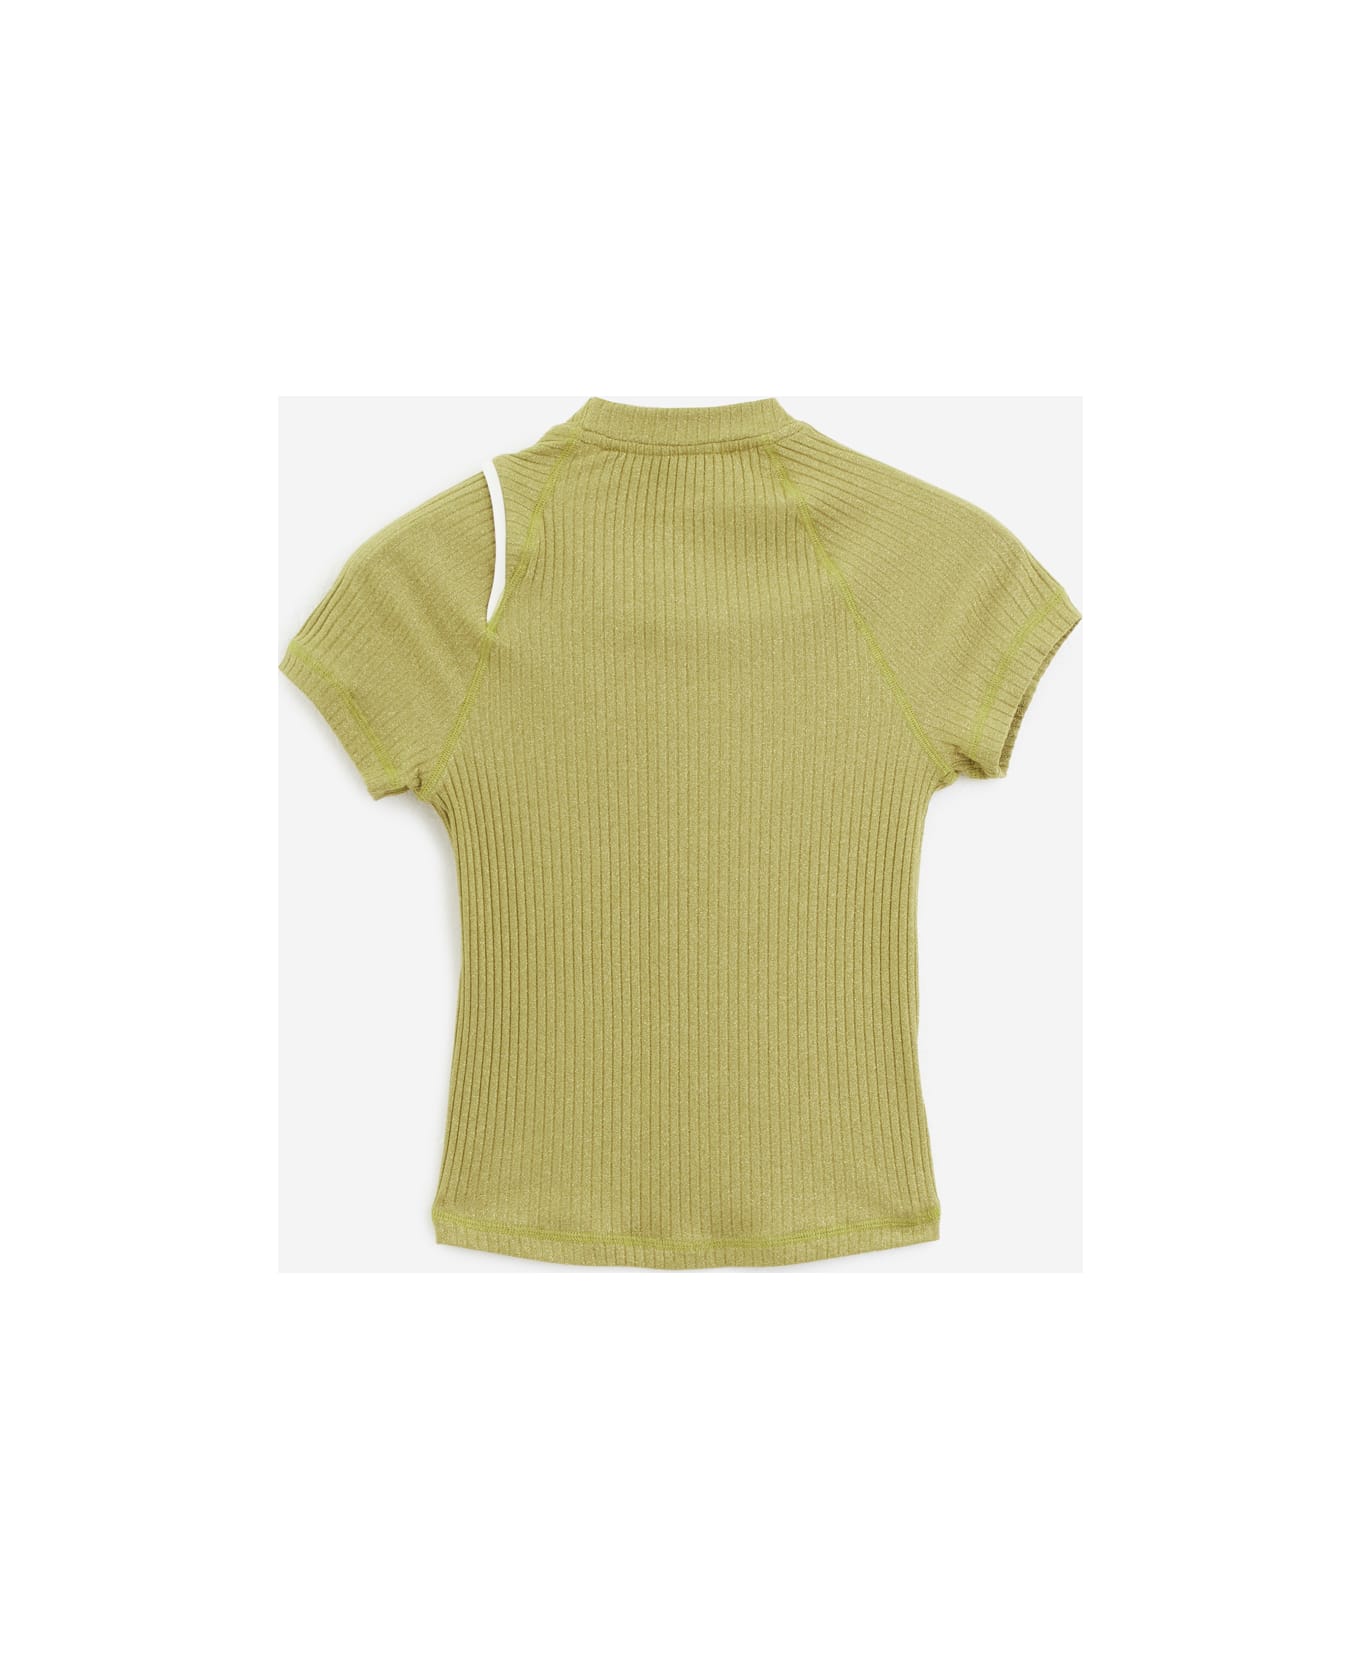 Ottolinger Lurex T-shirt T-shirt - gold ニットウェア